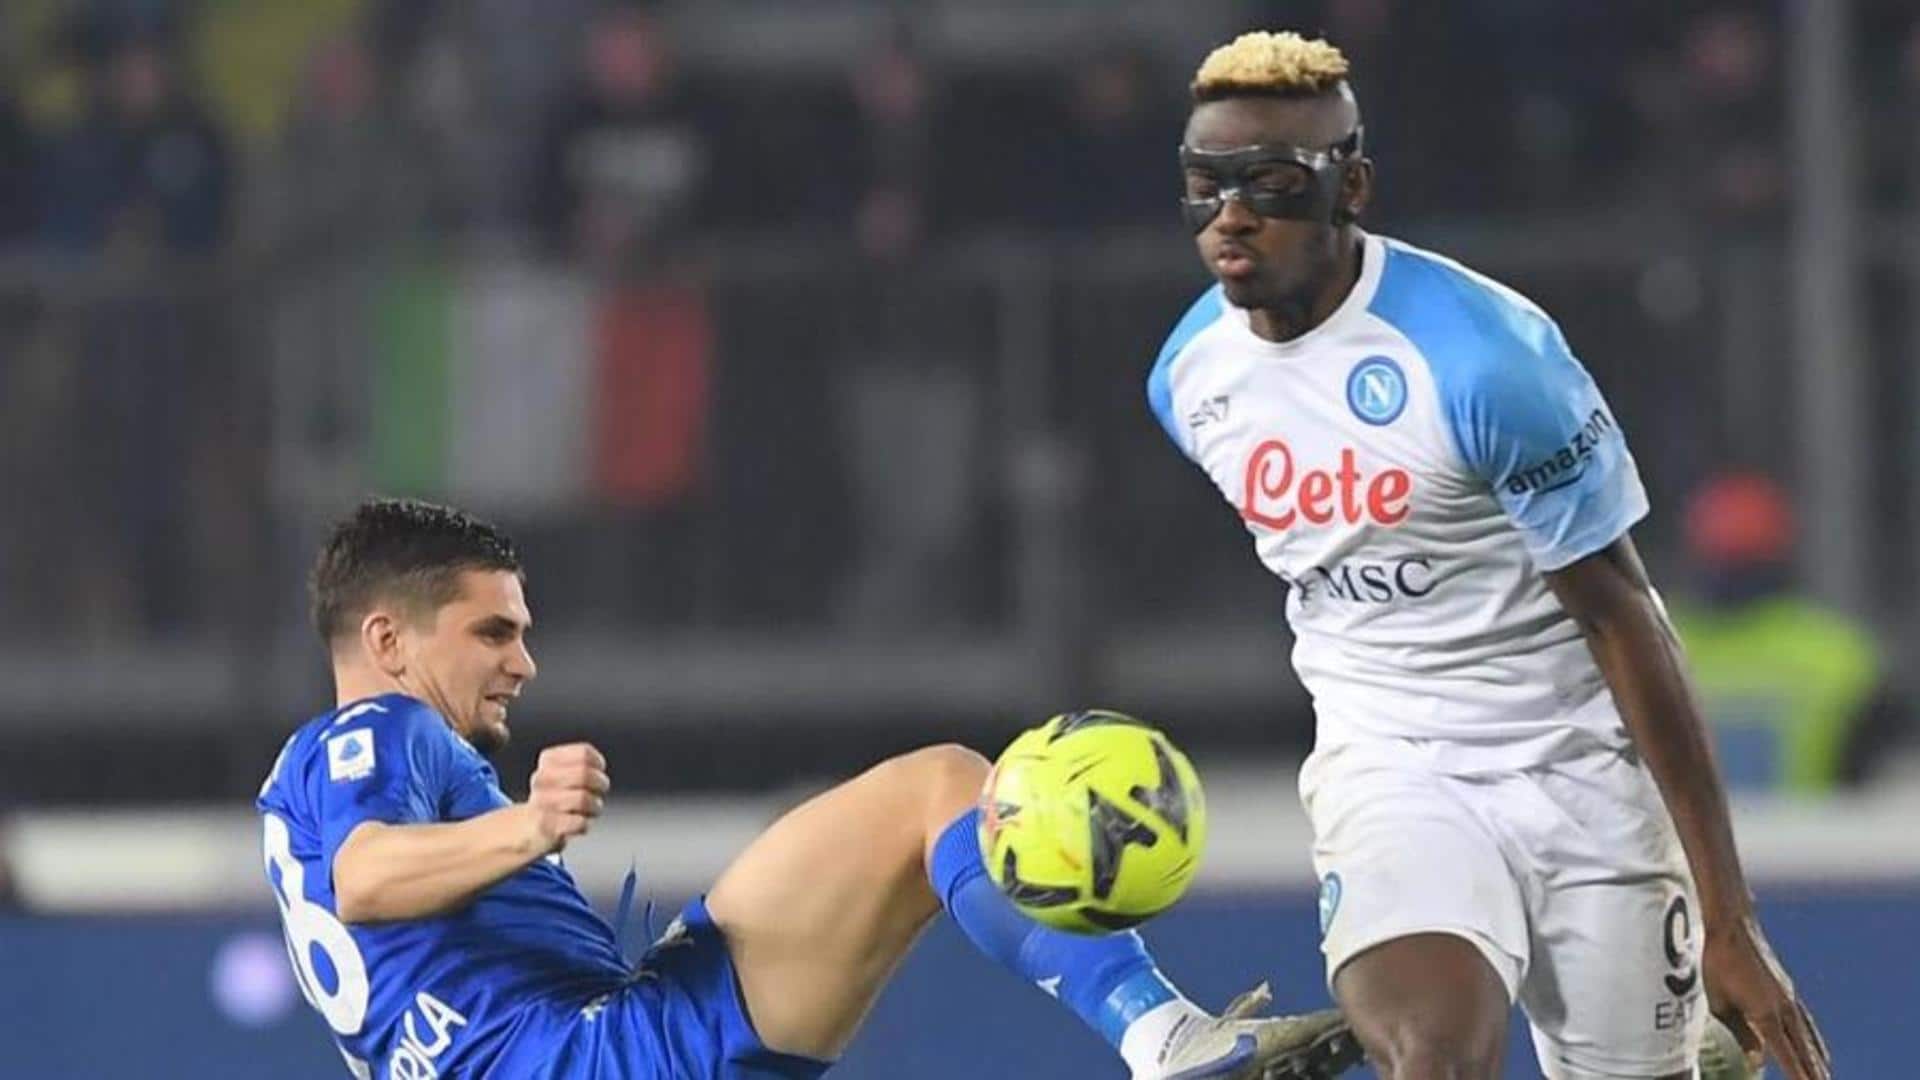 Napoli seal 8th successive Serie A win: Decoding the stats